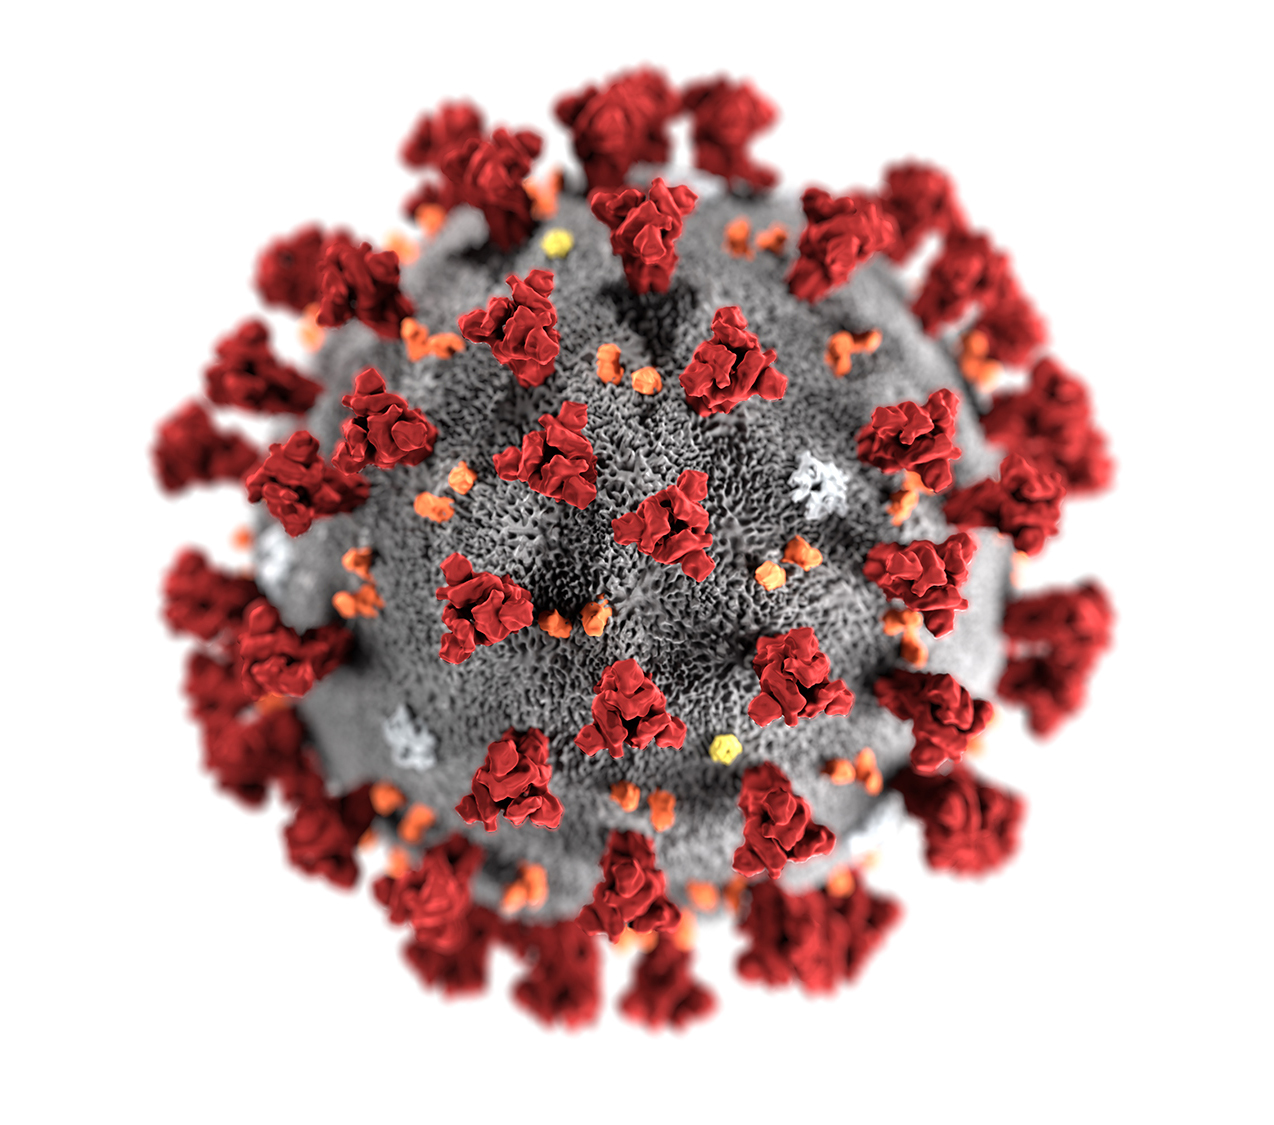 Coronavirus-CDC